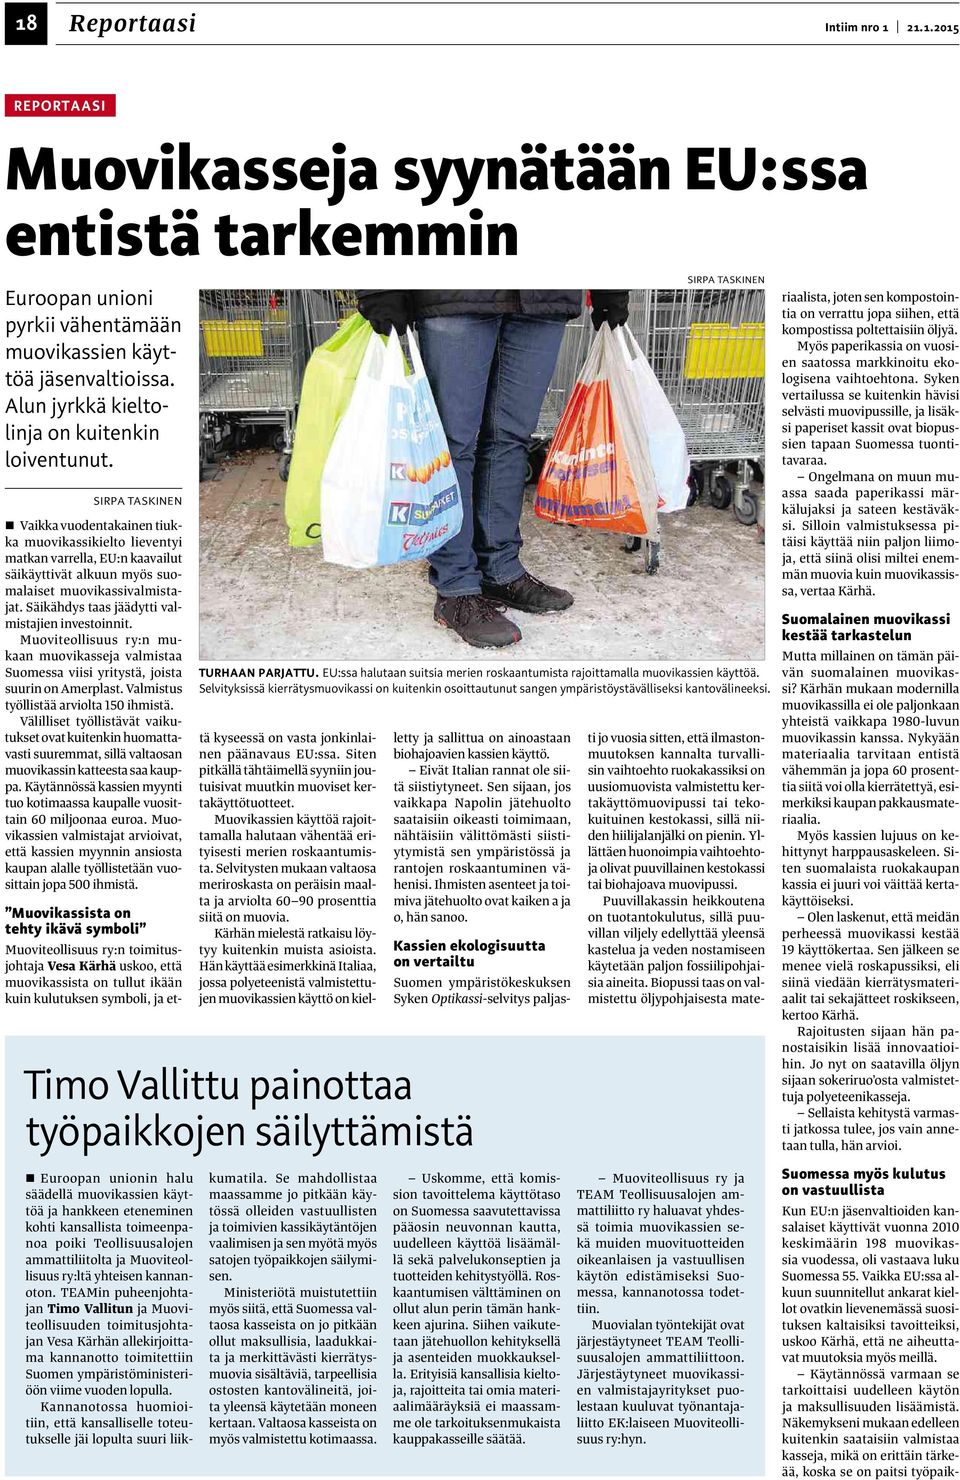 SIRPA TASKINEN Vaikka vuodentakainen tiukka muovikassikielto lieventyi matkan varrella, EU:n kaavailut säikäyttivät alkuun myös suomalaiset muovikassivalmistajat.